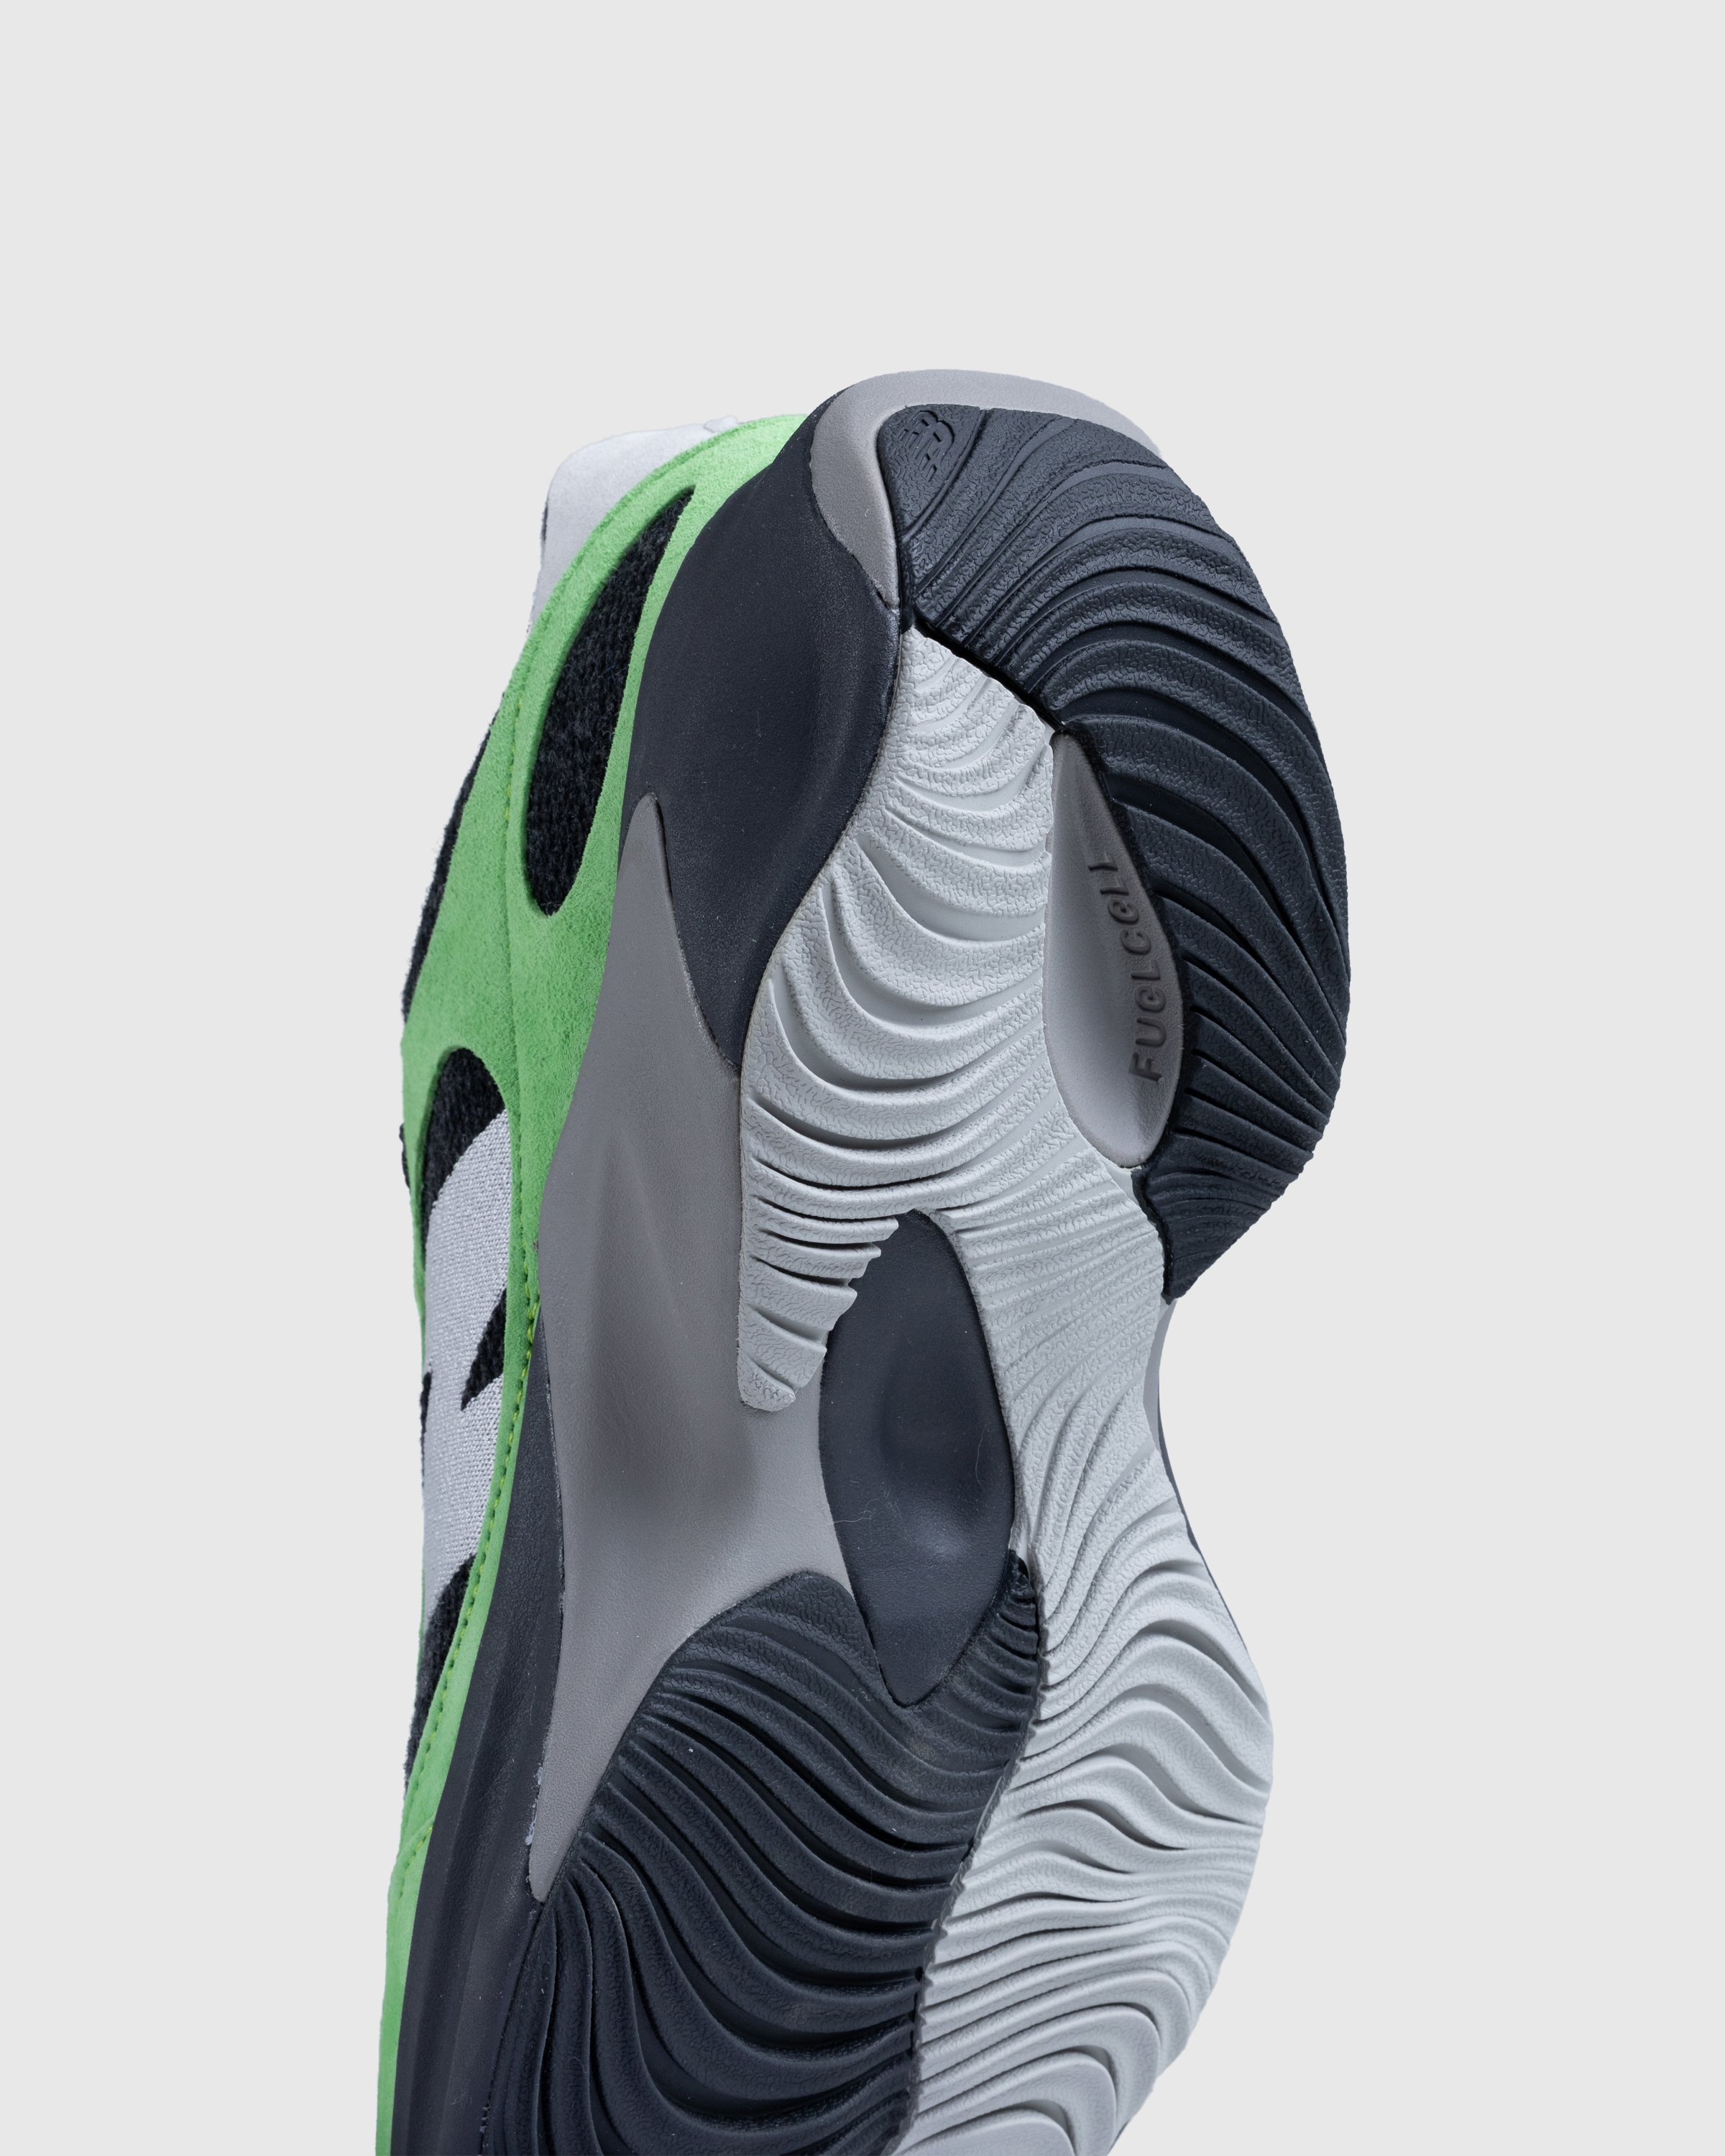 New Balance - WRPD Runner Green/Summer Fog - Footwear - Green - Image 6